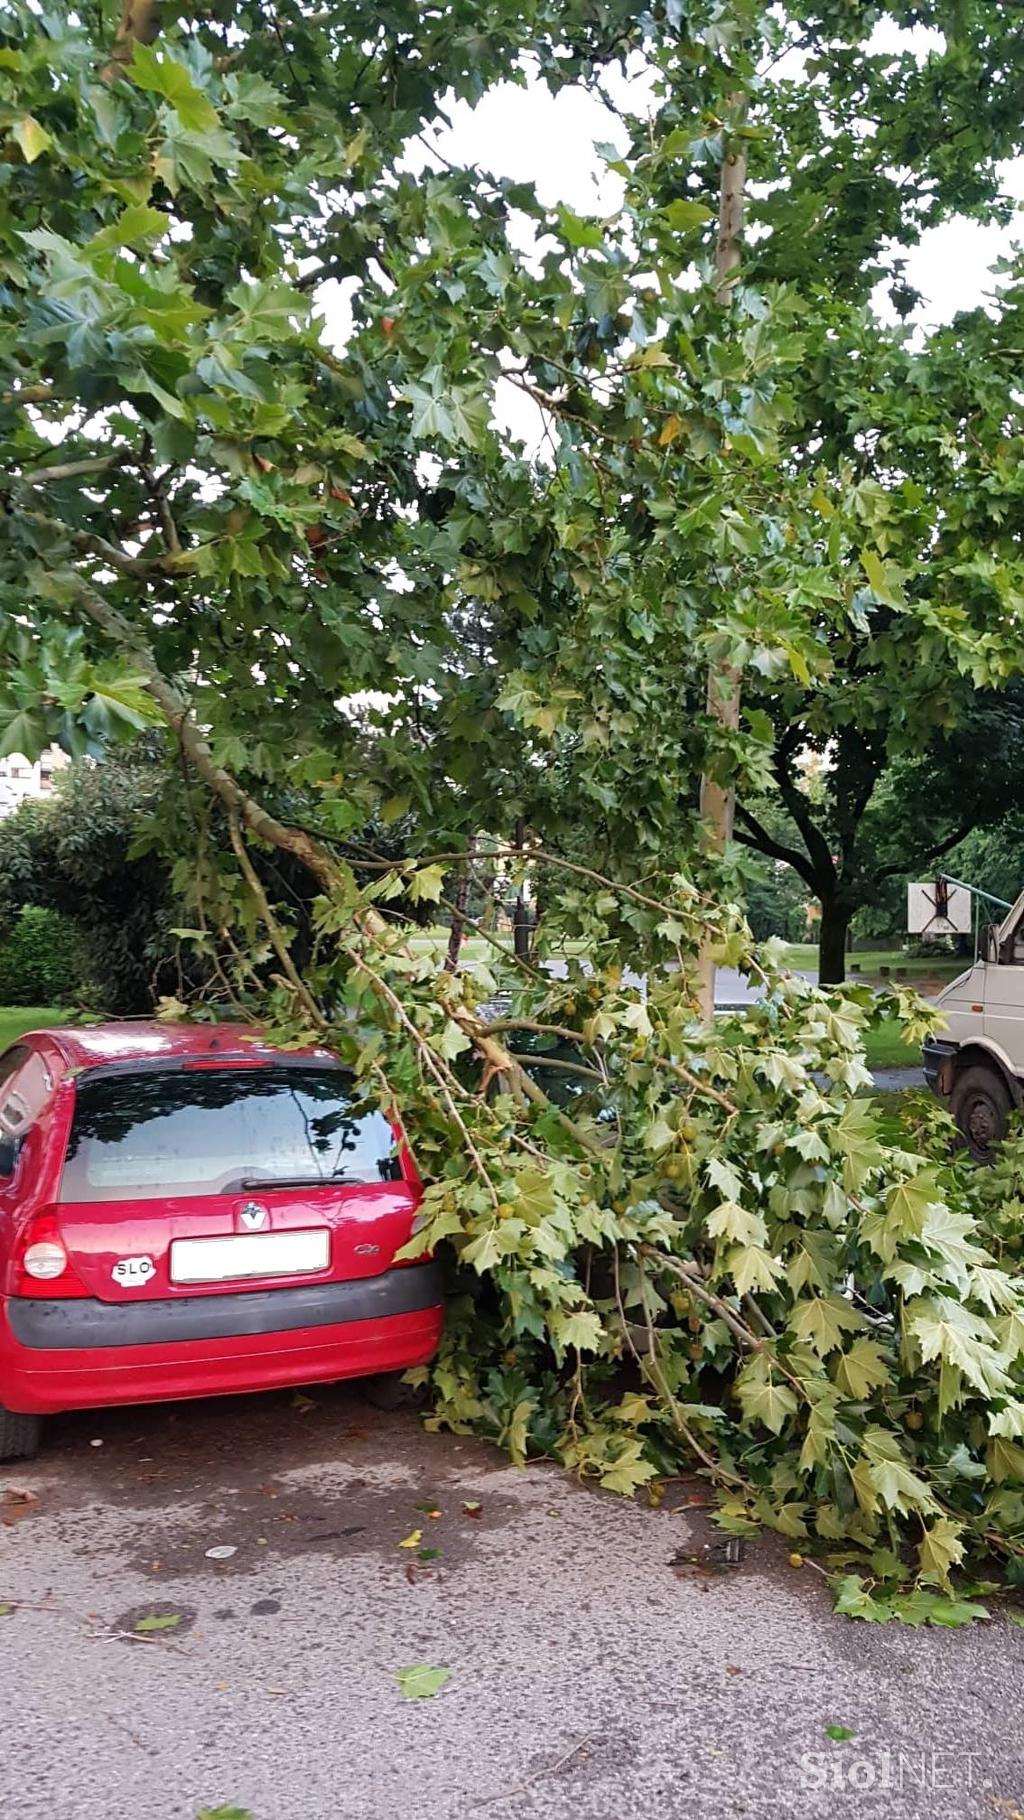 Posledice nevihte v Ljubljani